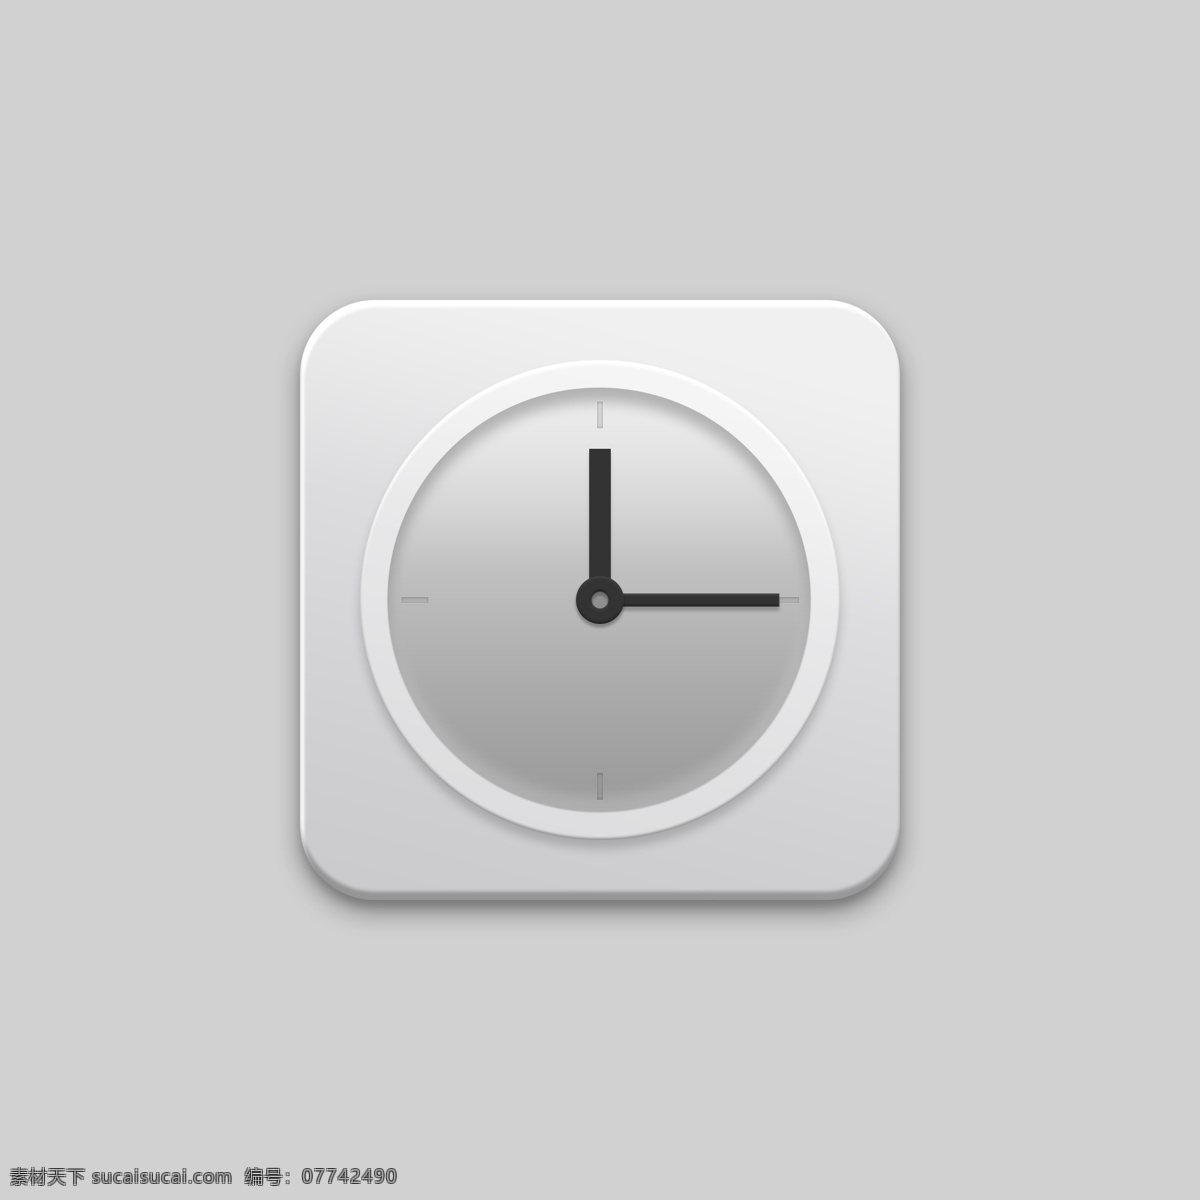 时间 时钟 灰白色 手机 图标 主题 手机主题 icon